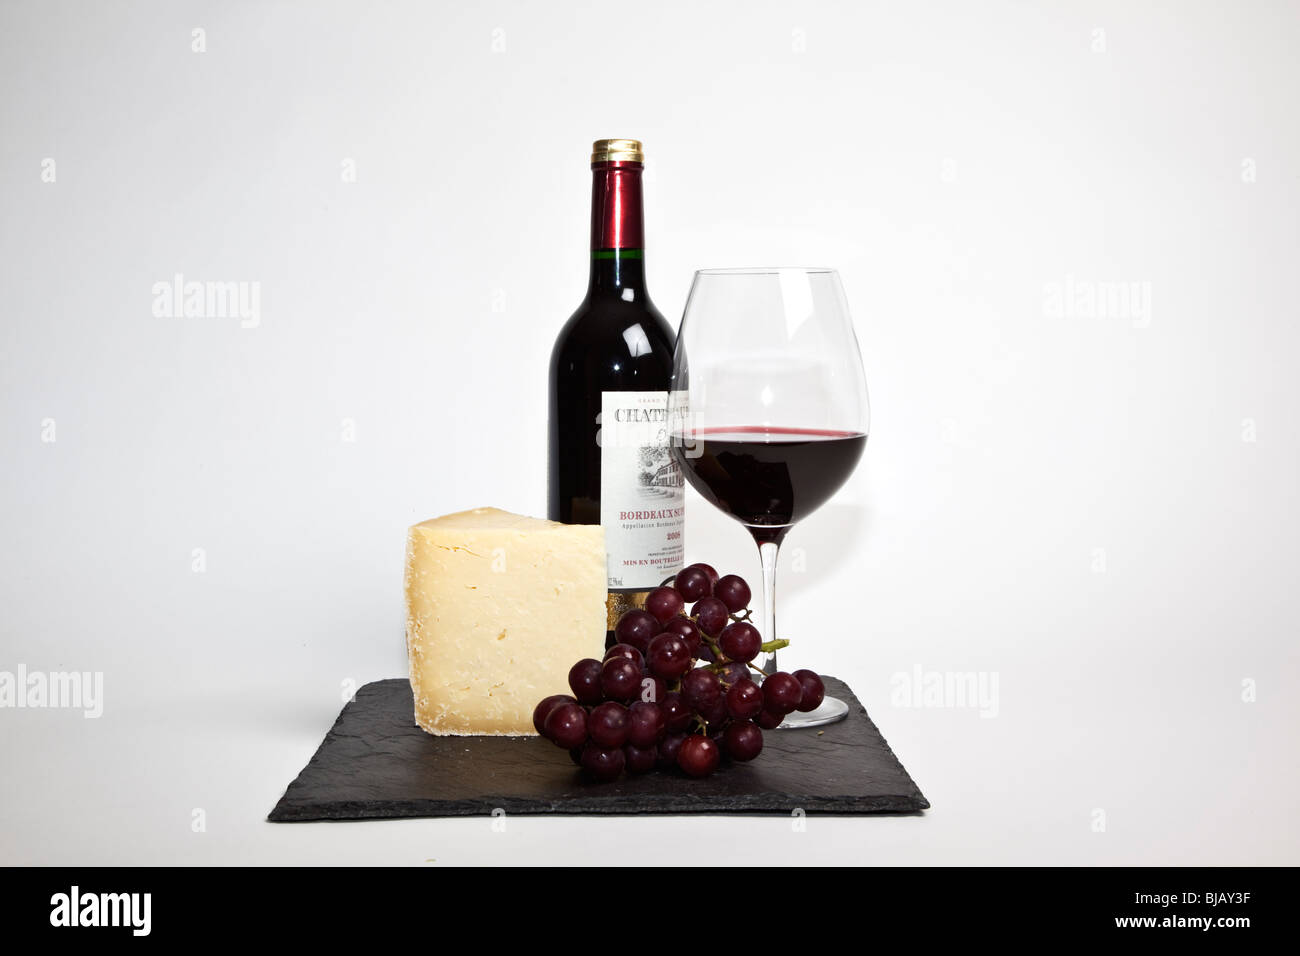 Still Life de vin rouge, un morceau de fromage, raisins et une bouteille de vin rouge sur une ardoise noire sur un fond blanc Banque D'Images